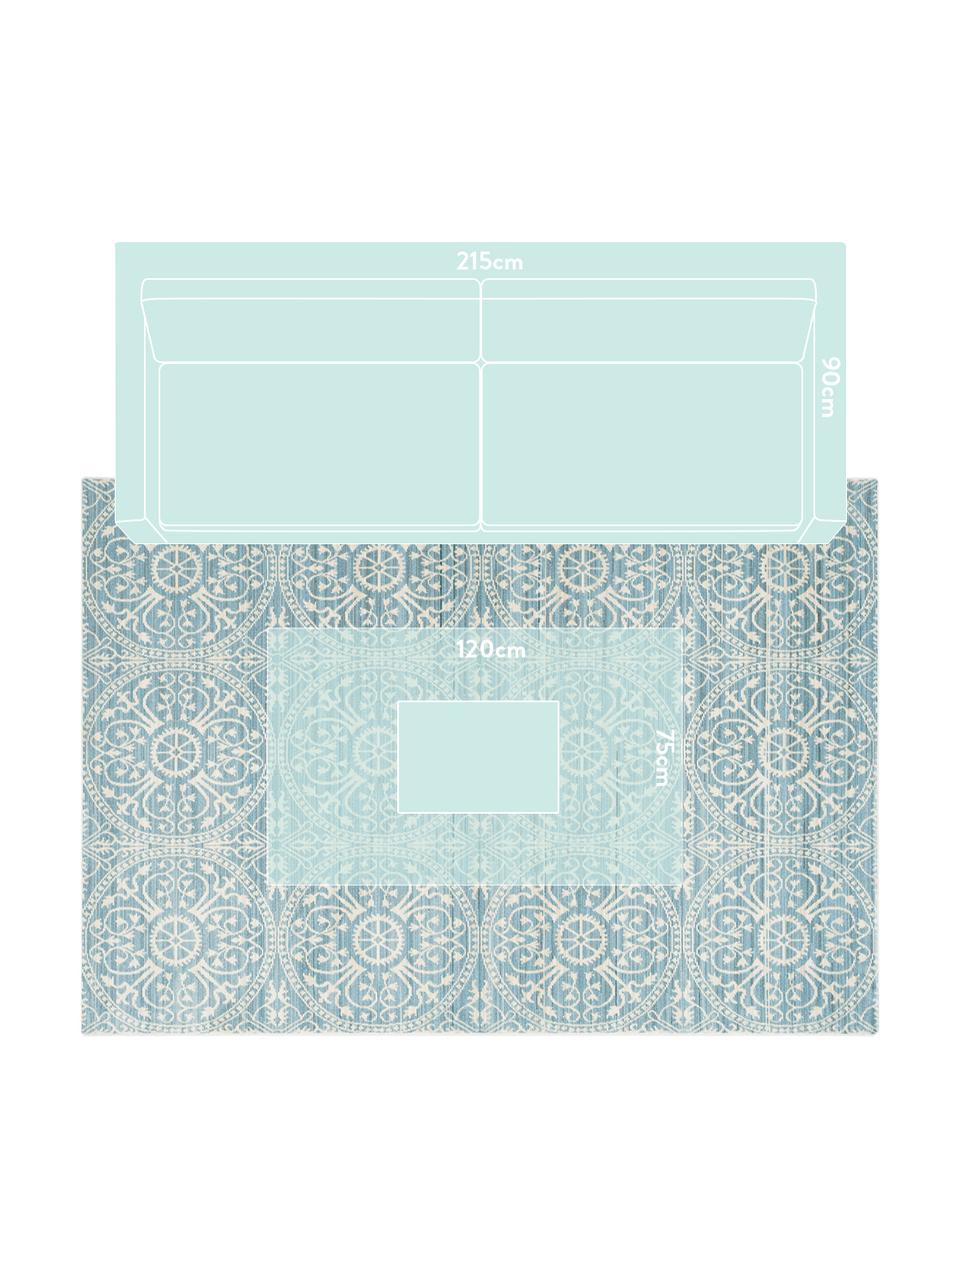 Teppich Taryn in Türkis-Weiss, Flor: 100% Polyester, Türkis, Creme, B 150 x L 245 cm (Grösse M)